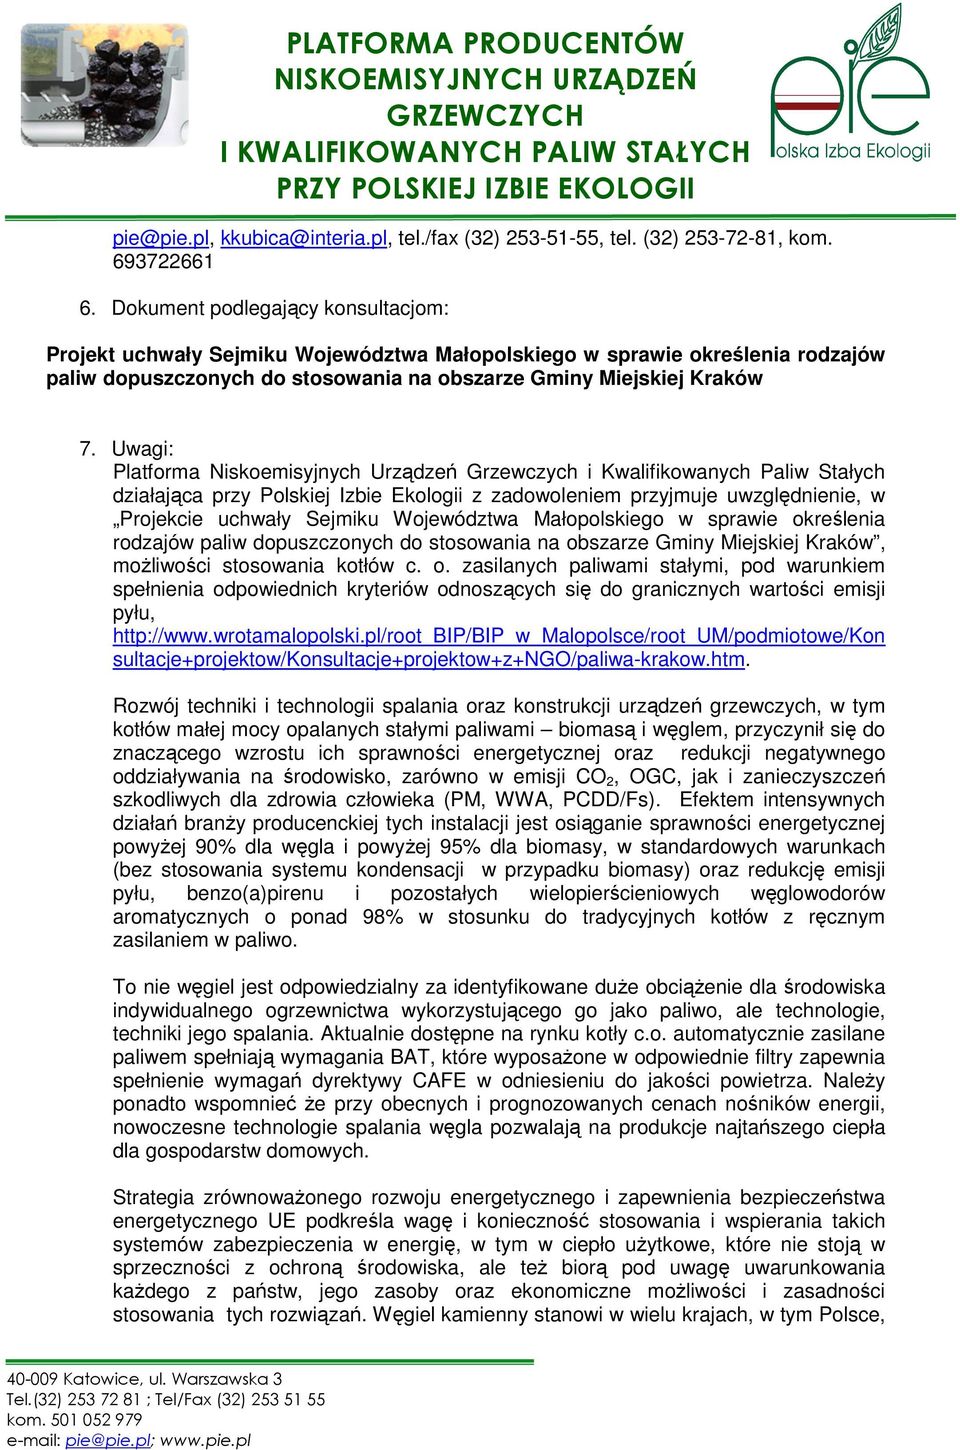 Uwagi: Platforma Niskoemisyjnych Urządzeń Grzewczych i Kwalifikowanych Paliw Stałych działająca przy Polskiej Izbie Ekologii z zadowoleniem przyjmuje uwzględnienie, w Projekcie uchwały Sejmiku